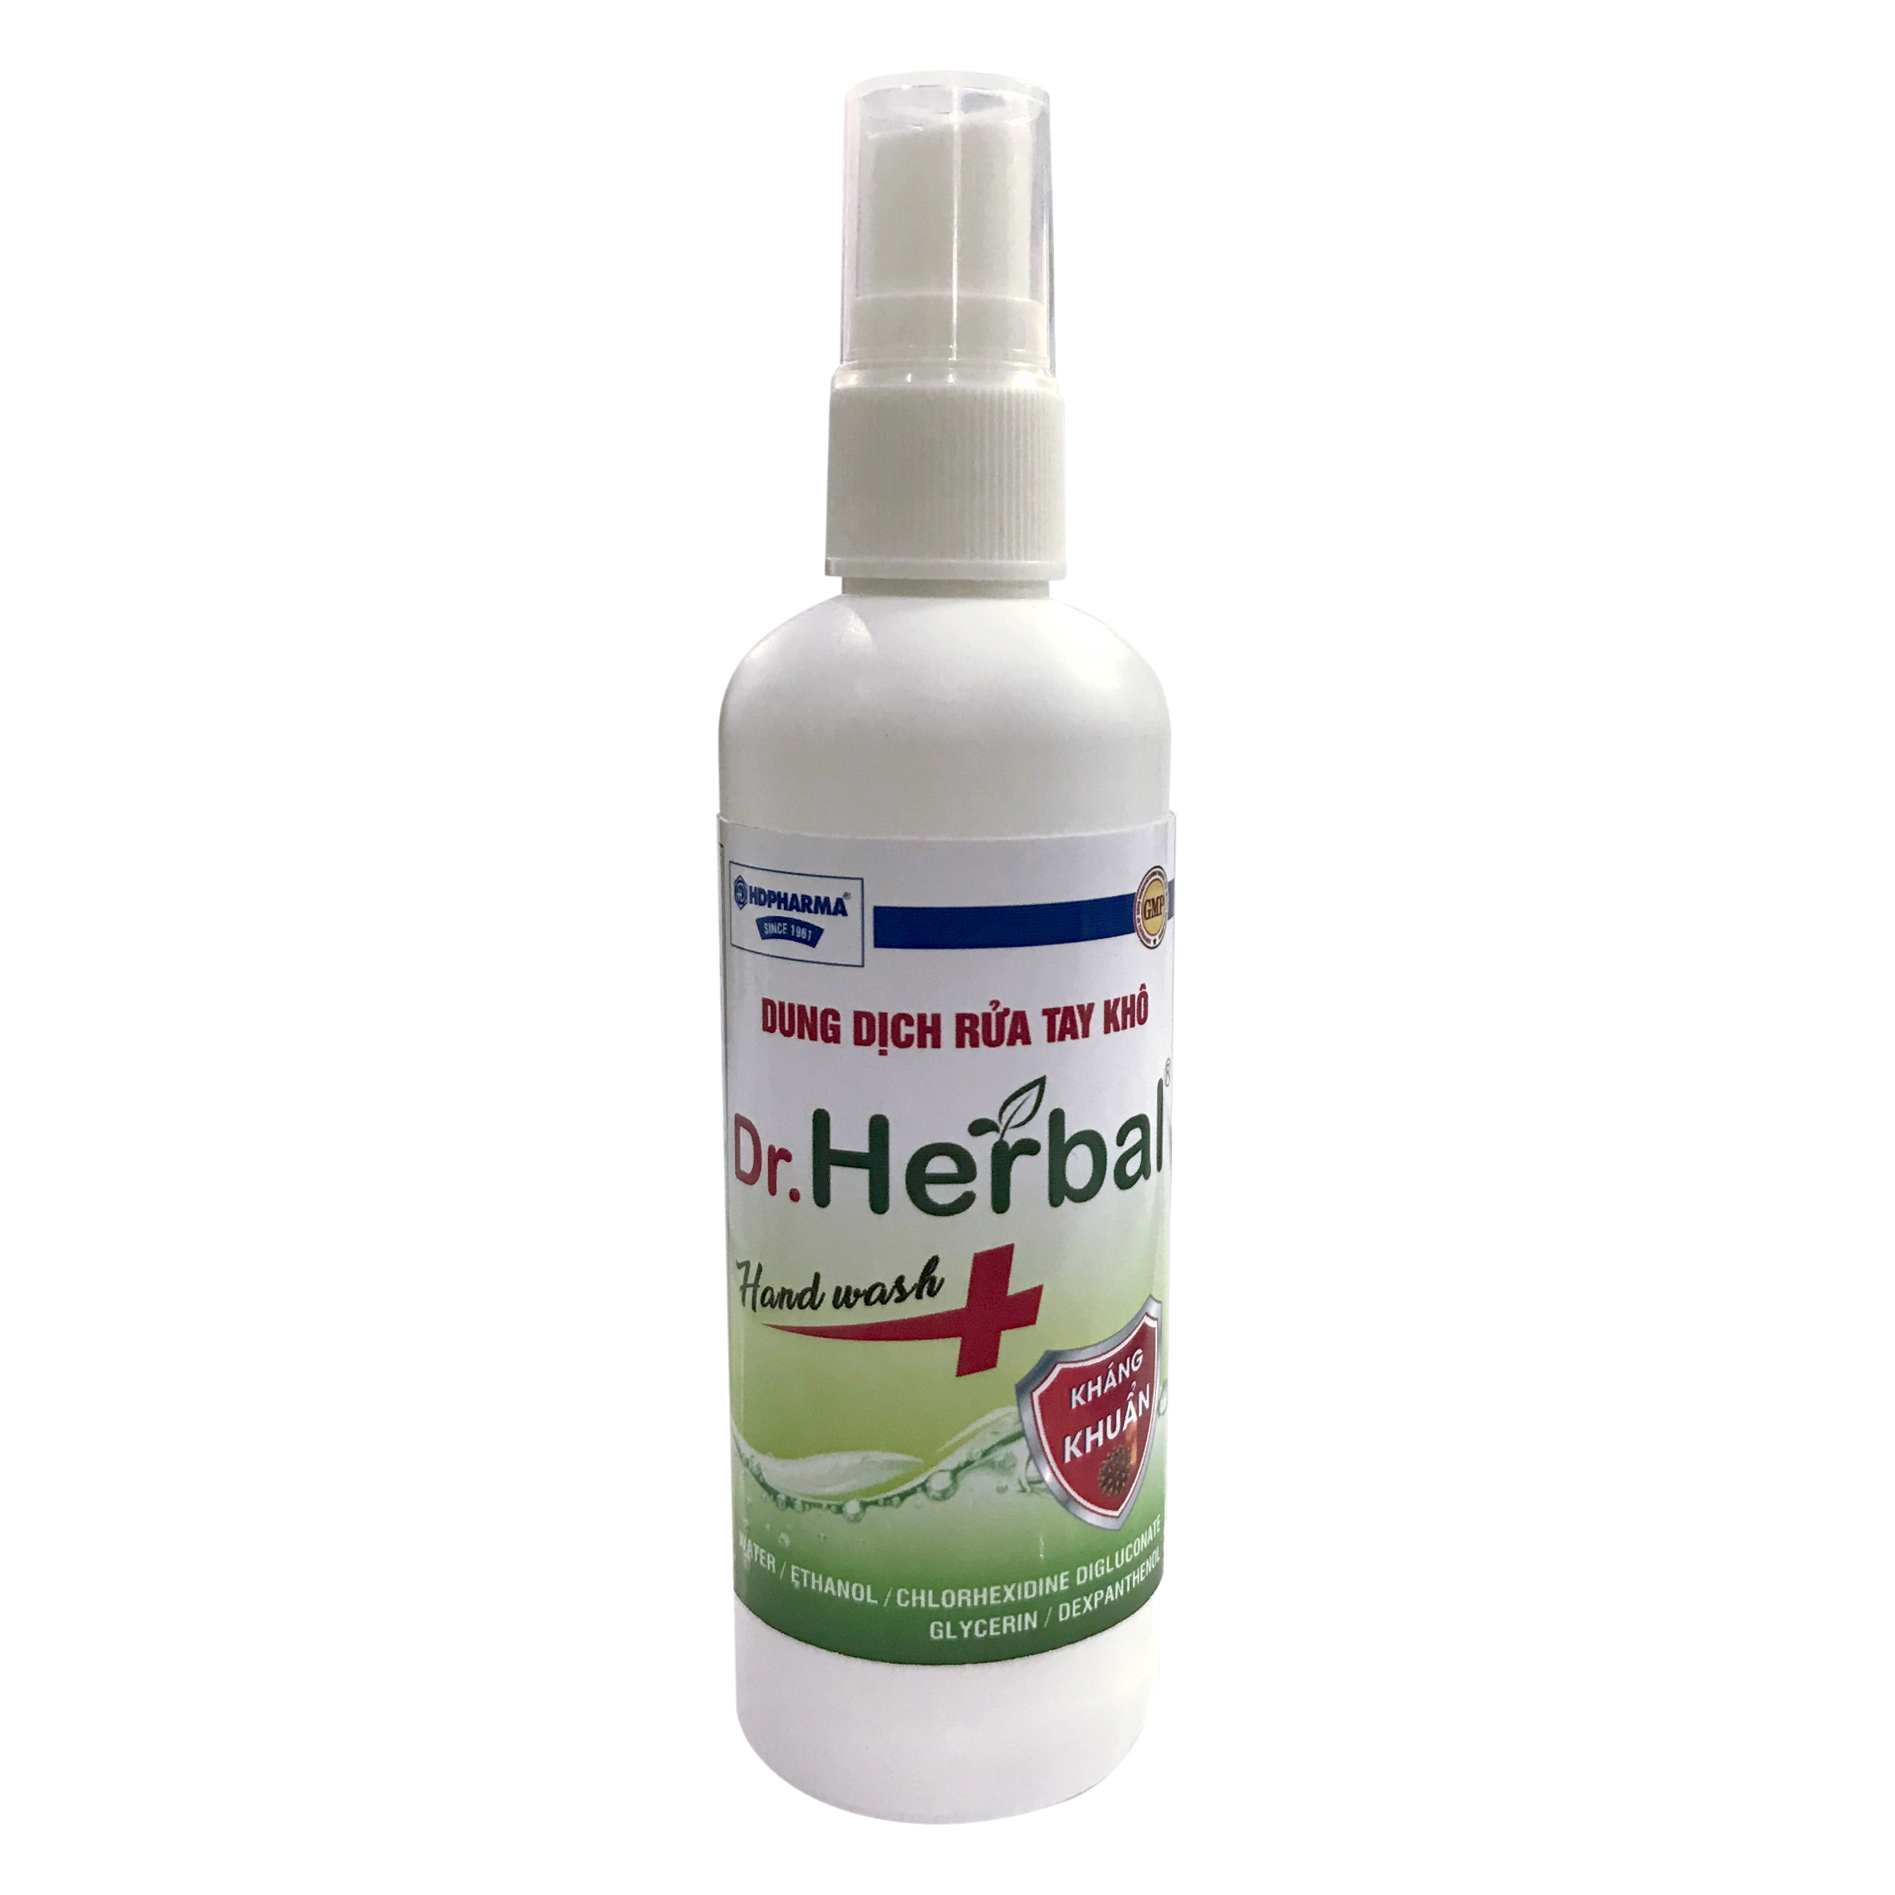 Dung Dịch Rửa Tay Khô Dr.Herbal Dạng Xịt - HDPHARMA - Kháng Khuẩn Mạnh (100 ml)